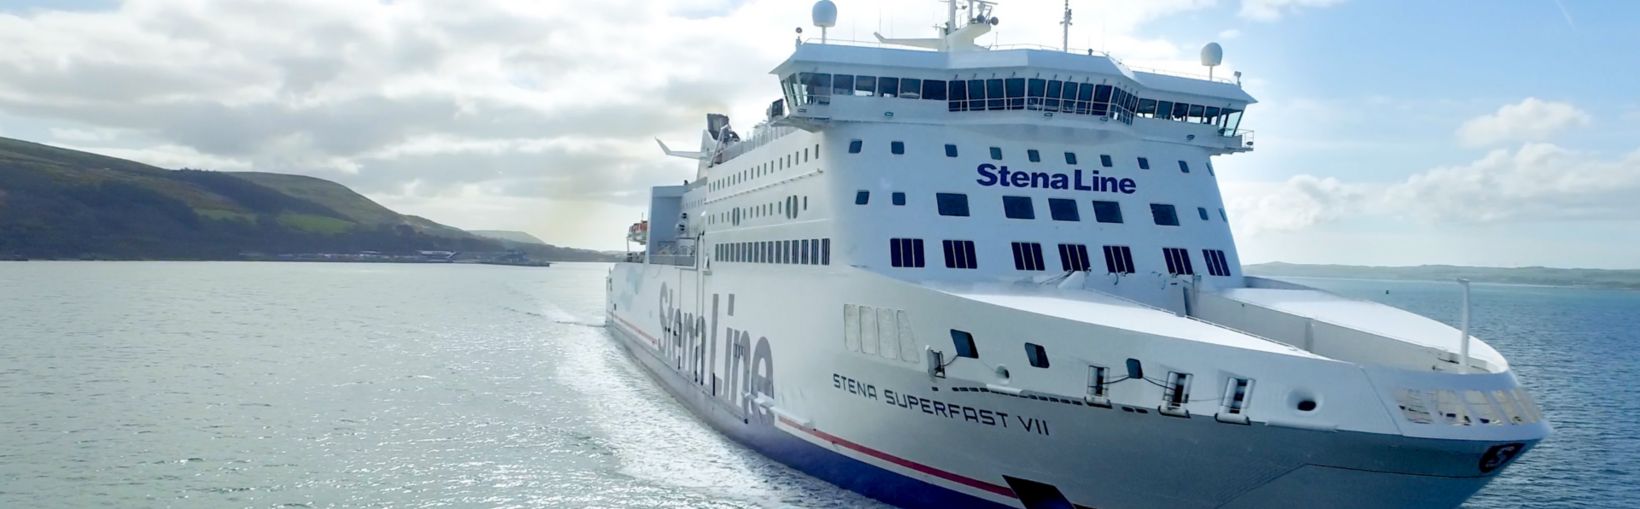 Færgen Stena Superfast VII til søs